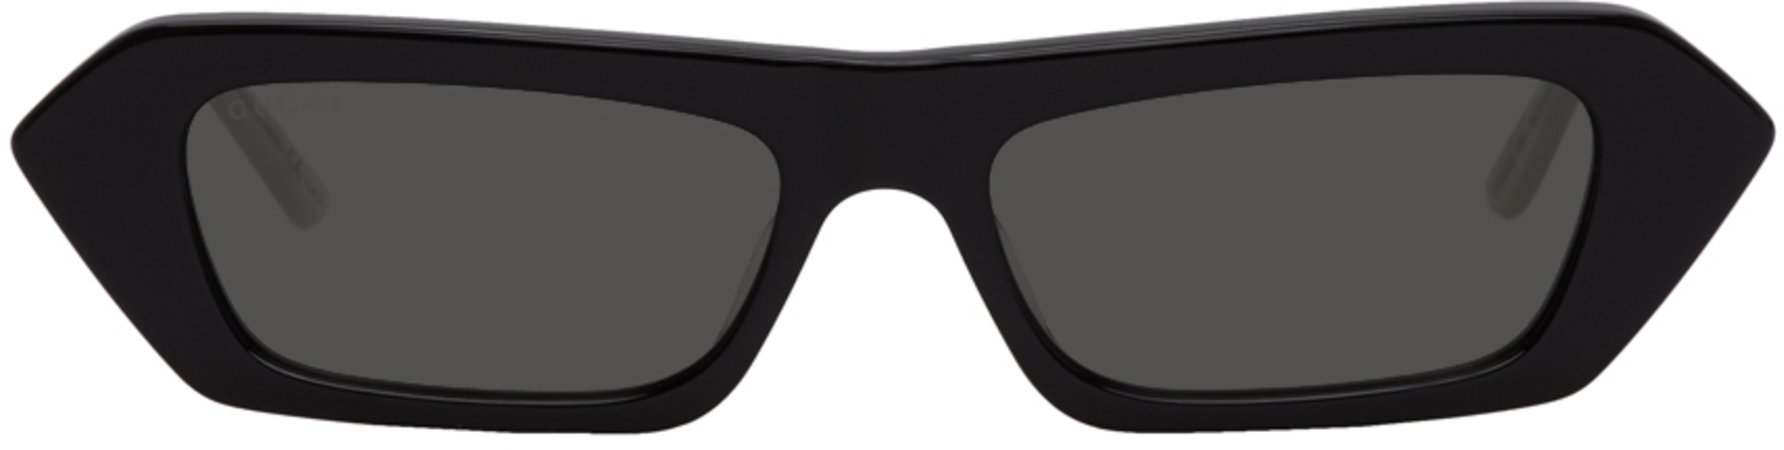 Gucci: Black Futuristic Sunglasses | SSENSE